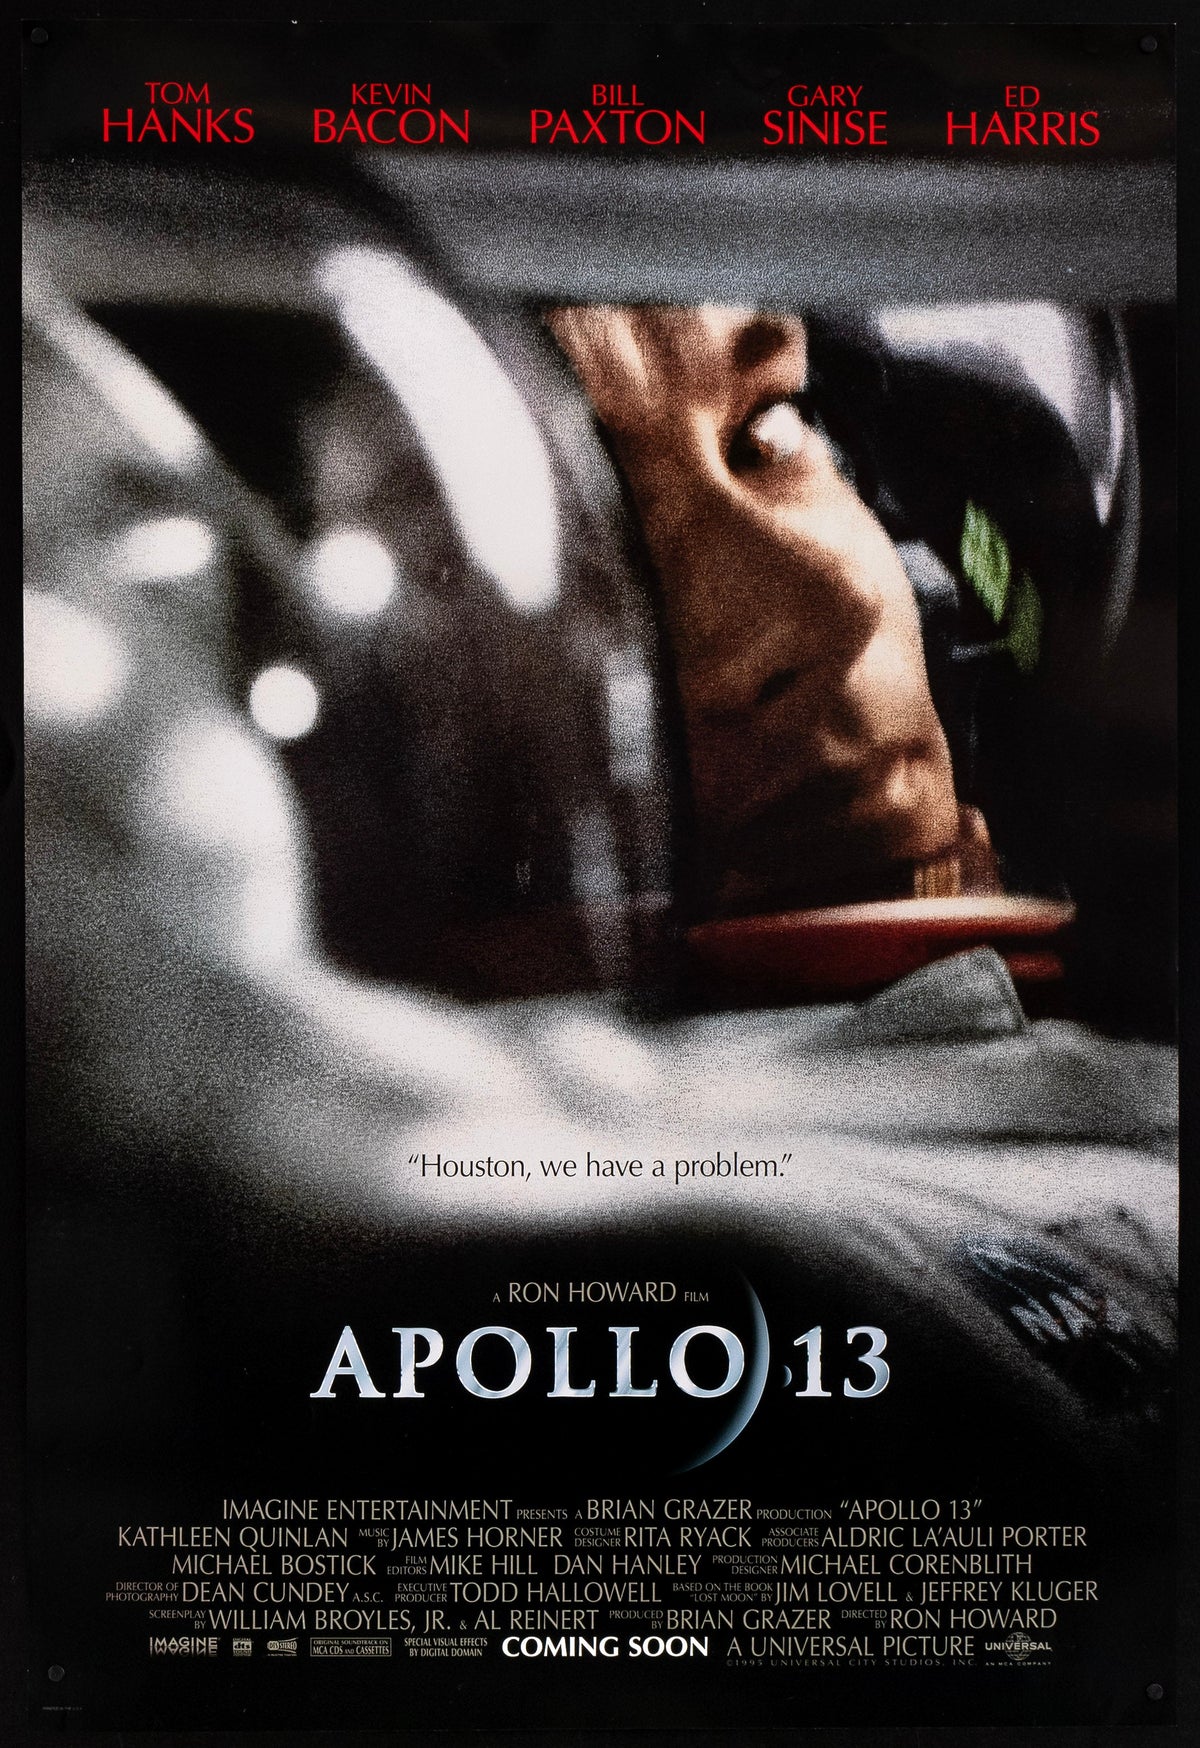 Apollo 13 1 Sheet (27x41) Original Vintage Movie Poster